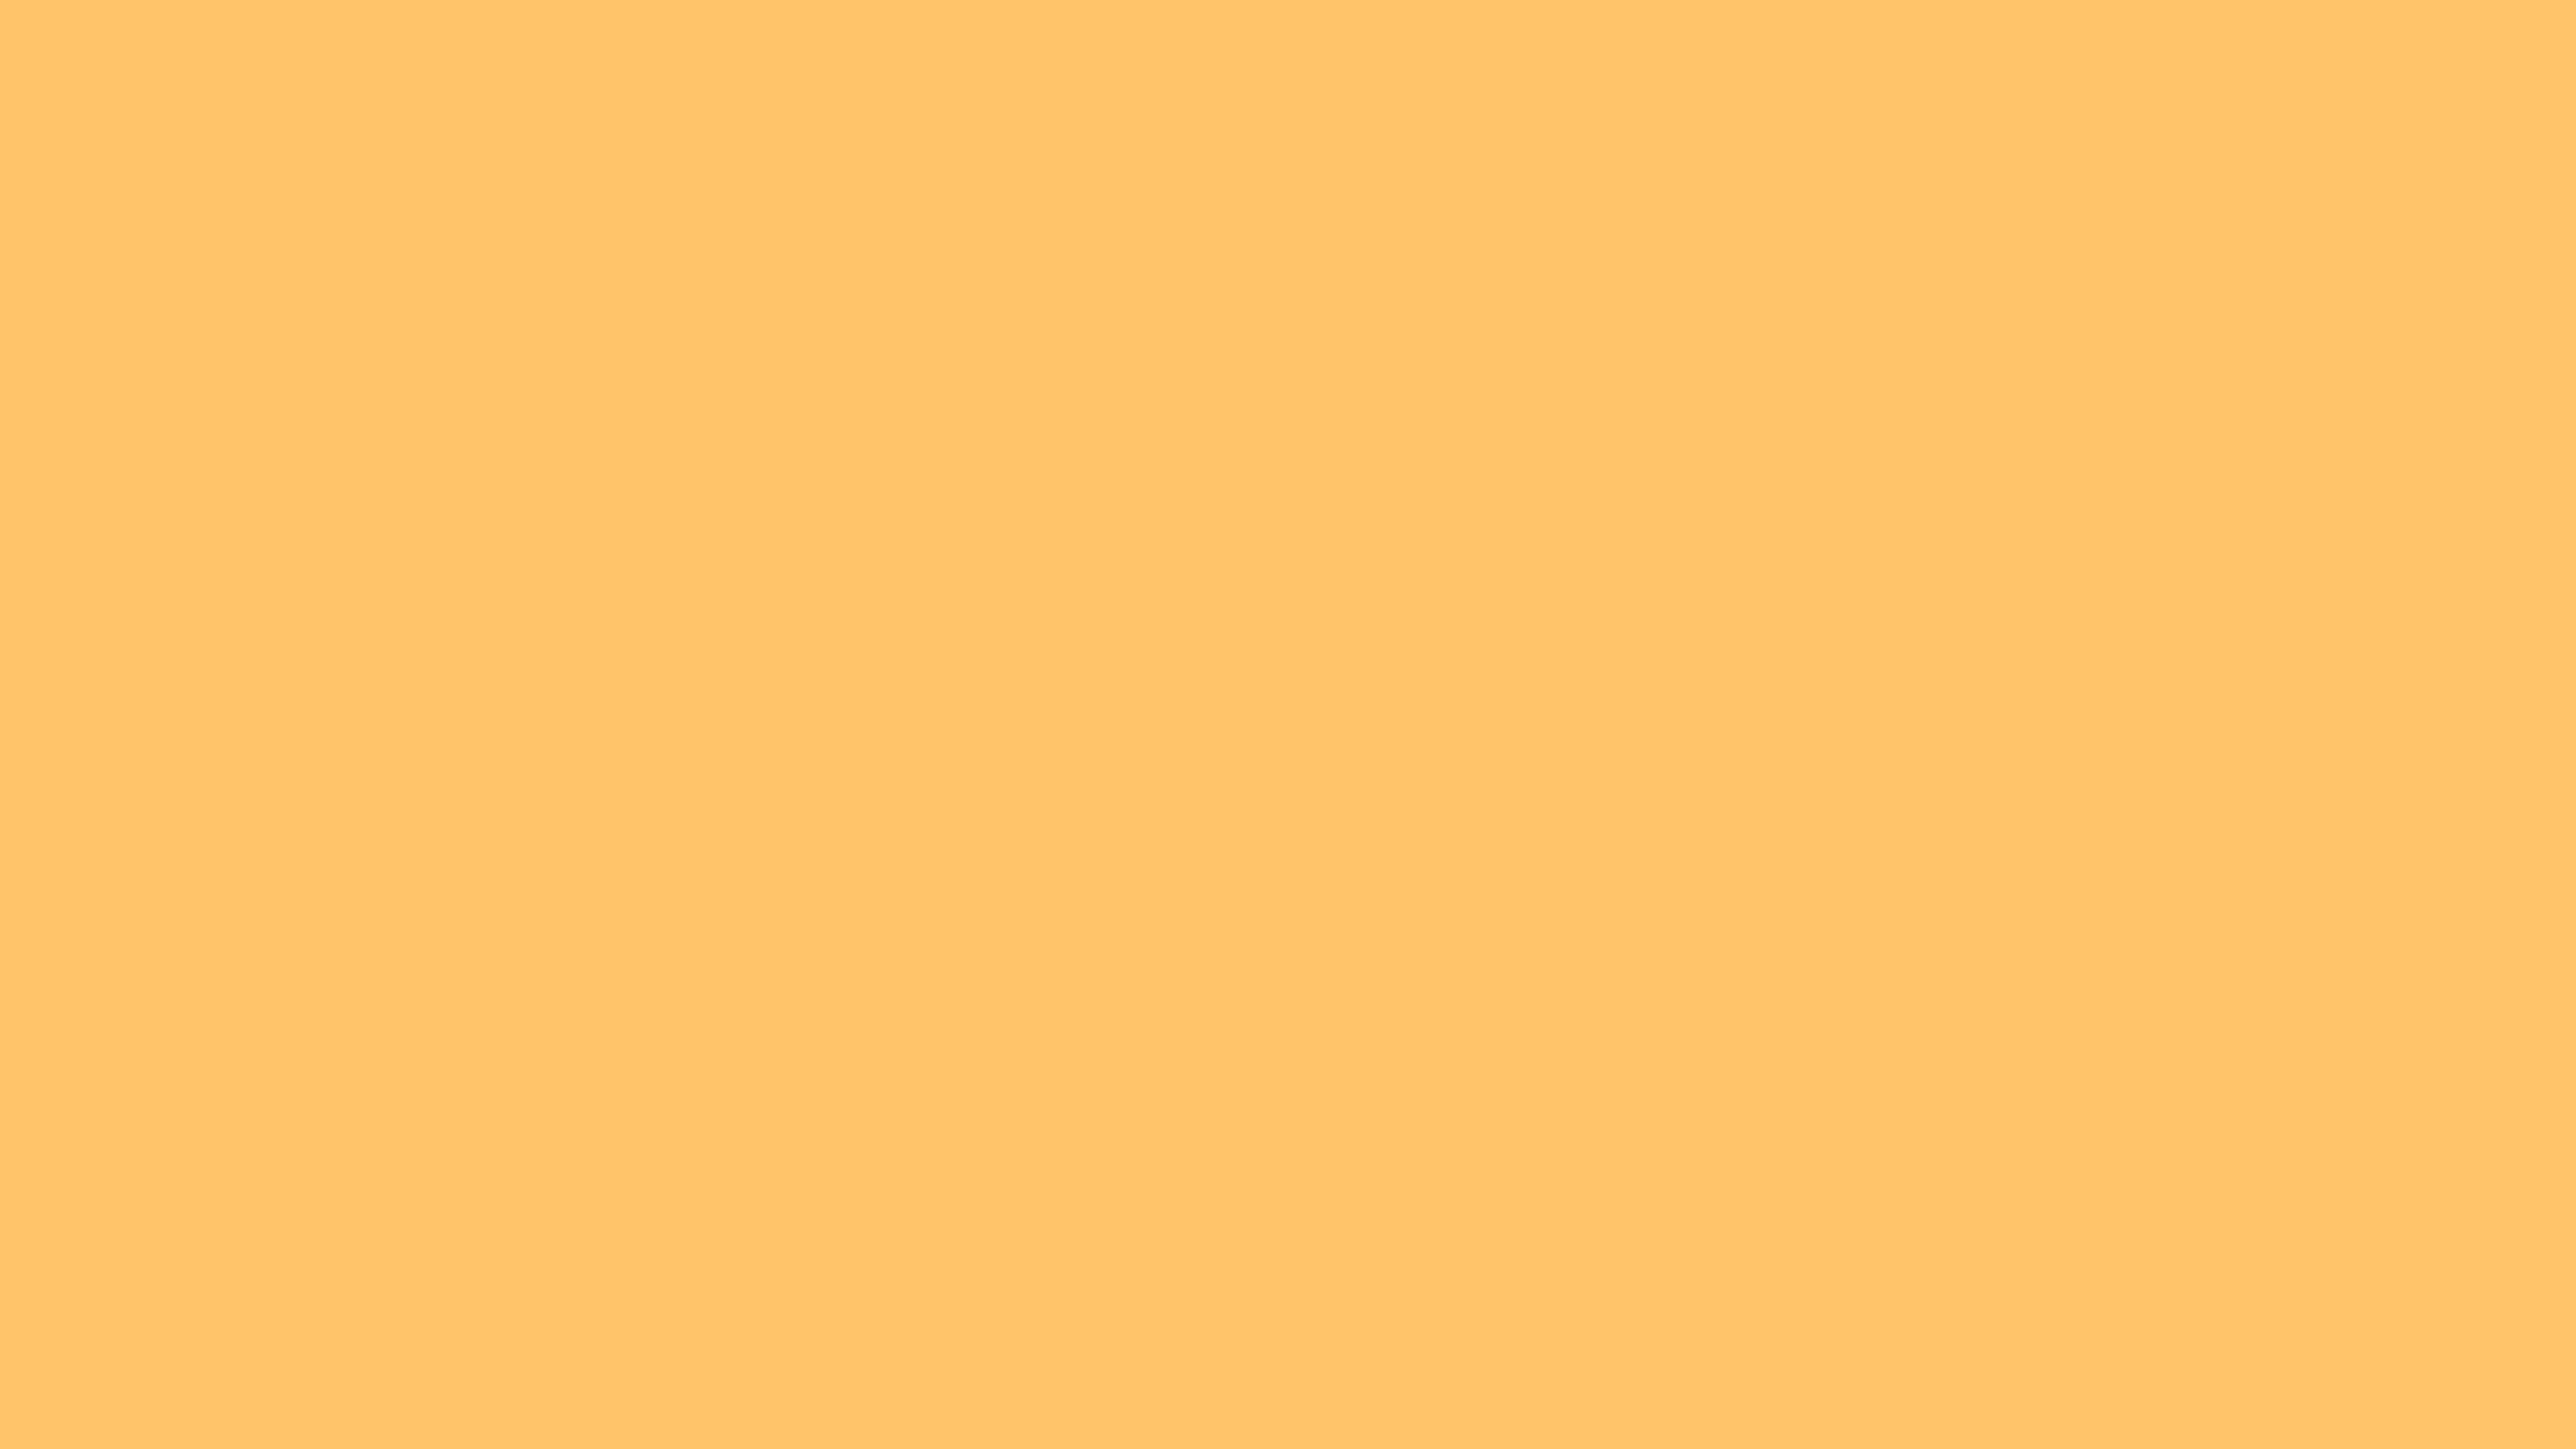 Light Orange Plain Background Image